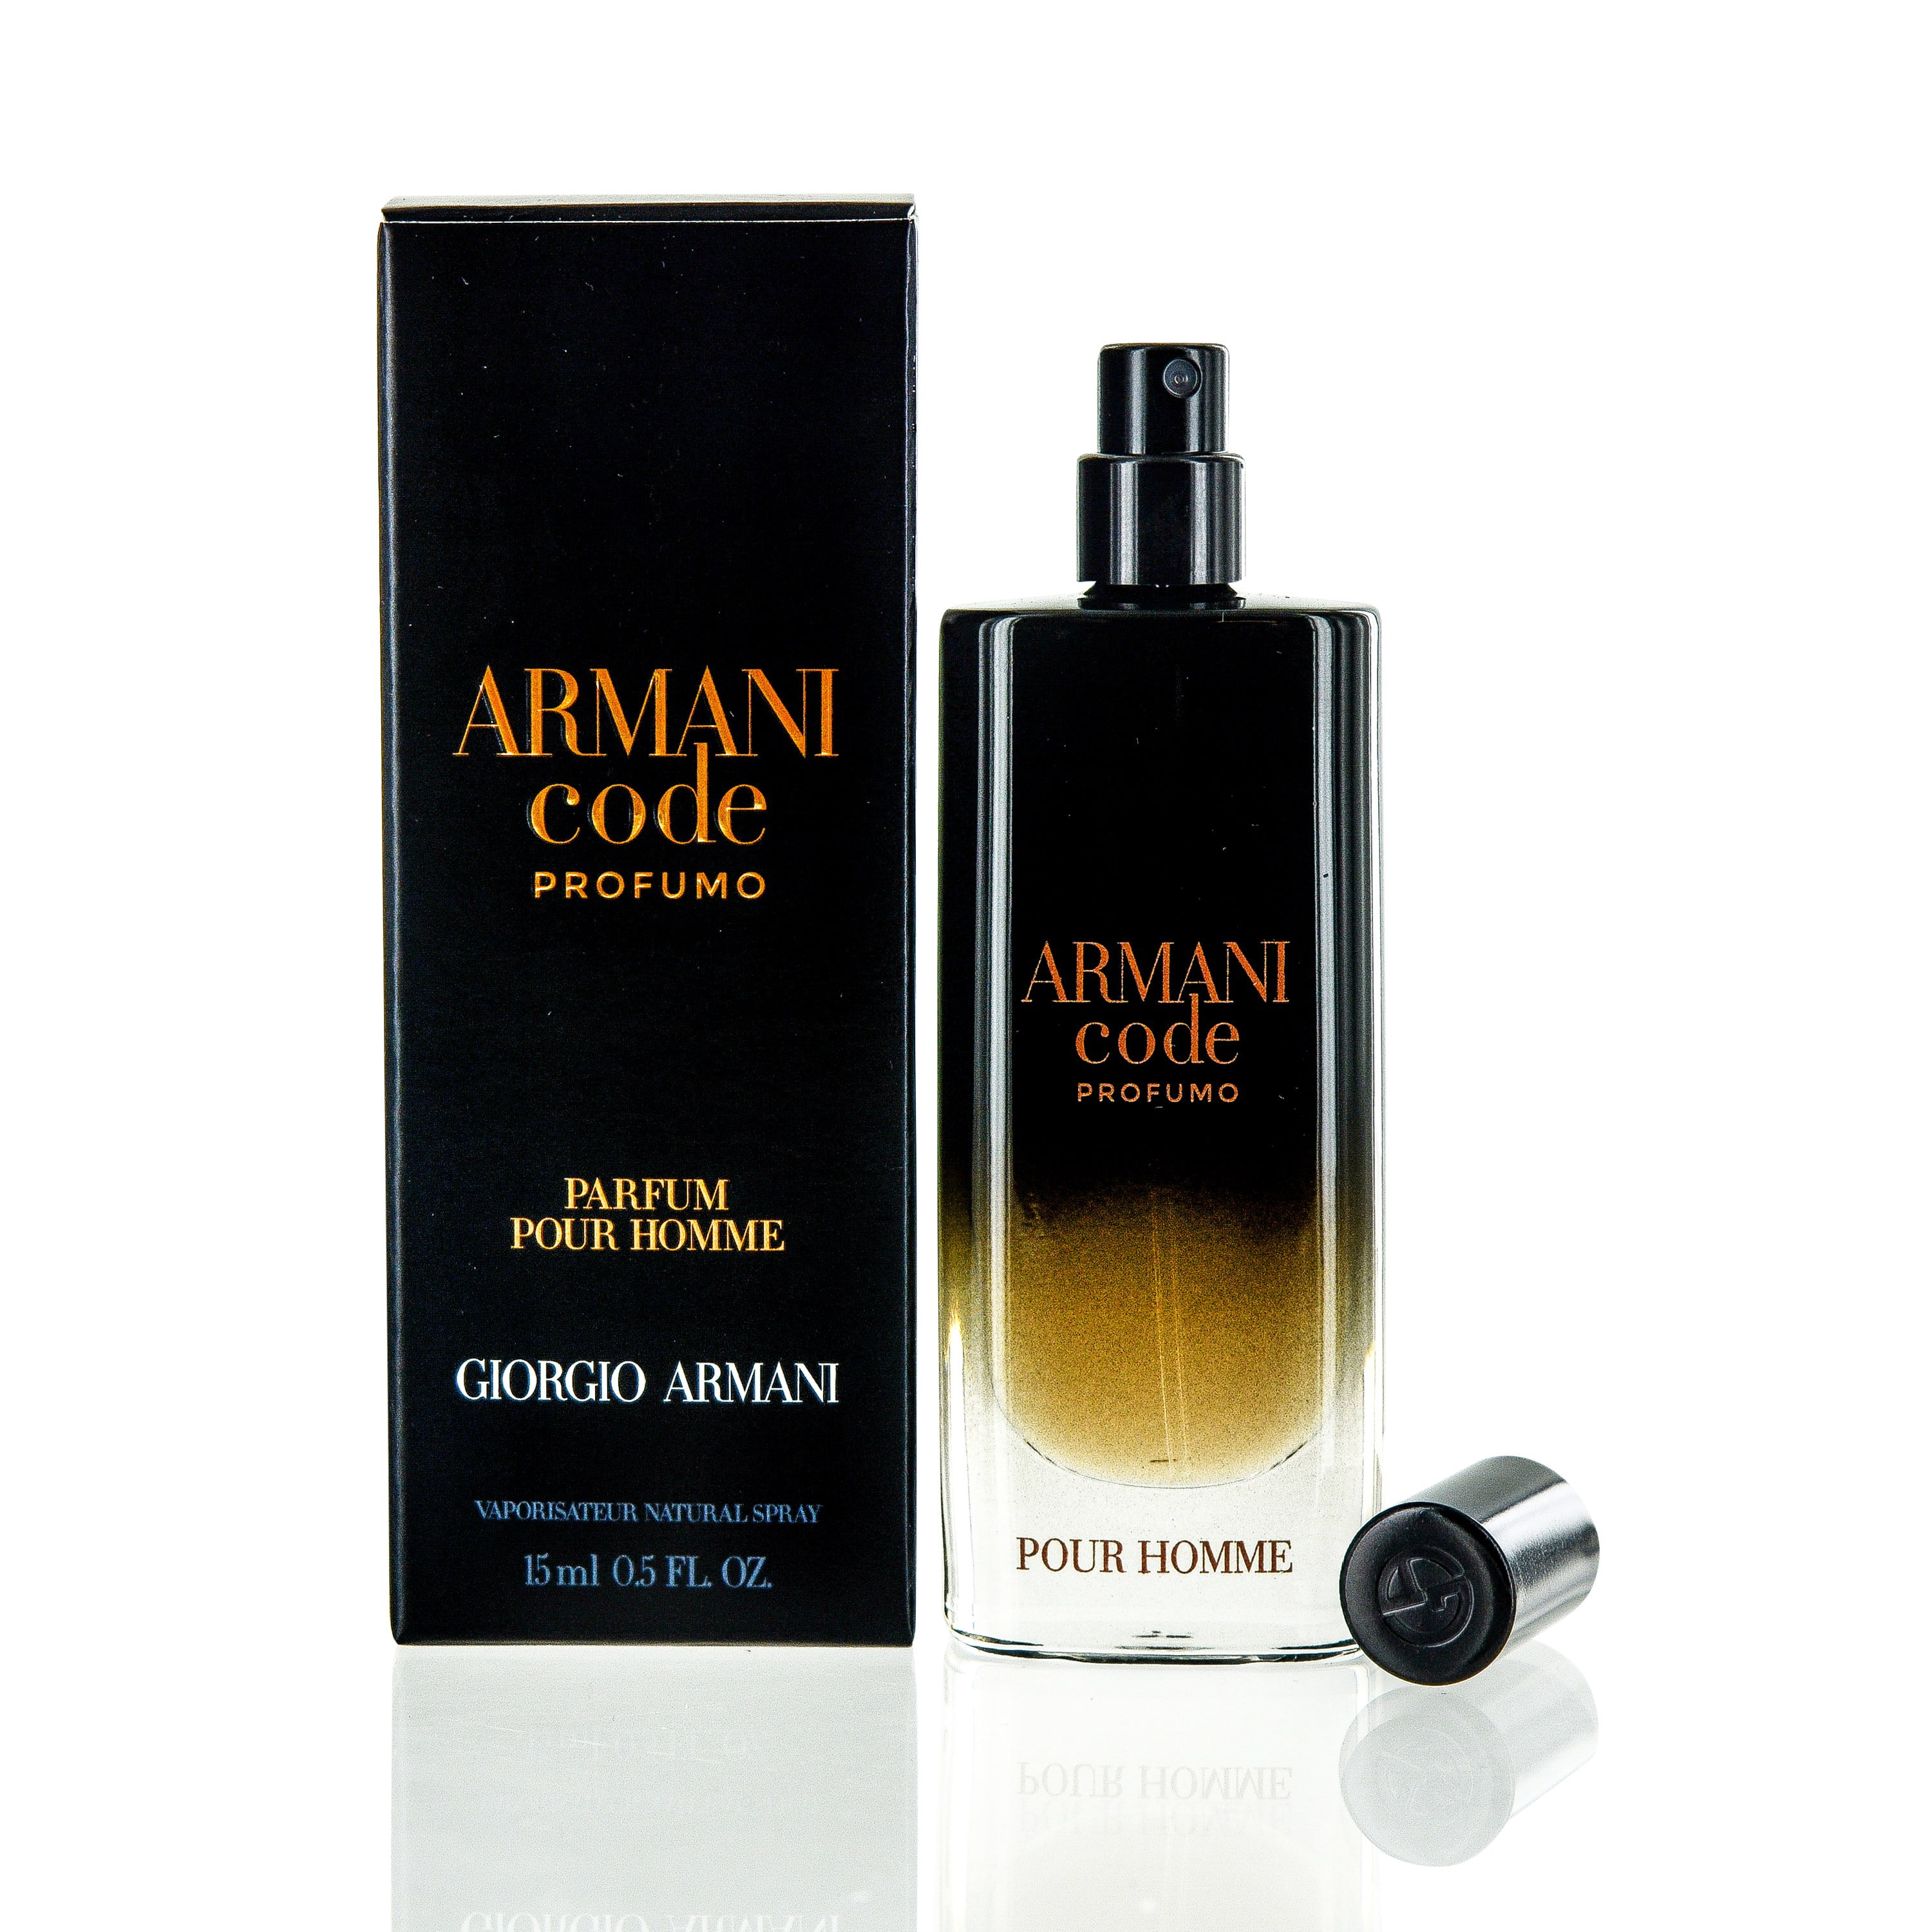 Code pour homme. Giorgio Armani Armani code profumo. Armani code 15 ml. Giorgio Armani code profumo. Giorgio Armani code homme Parfum.